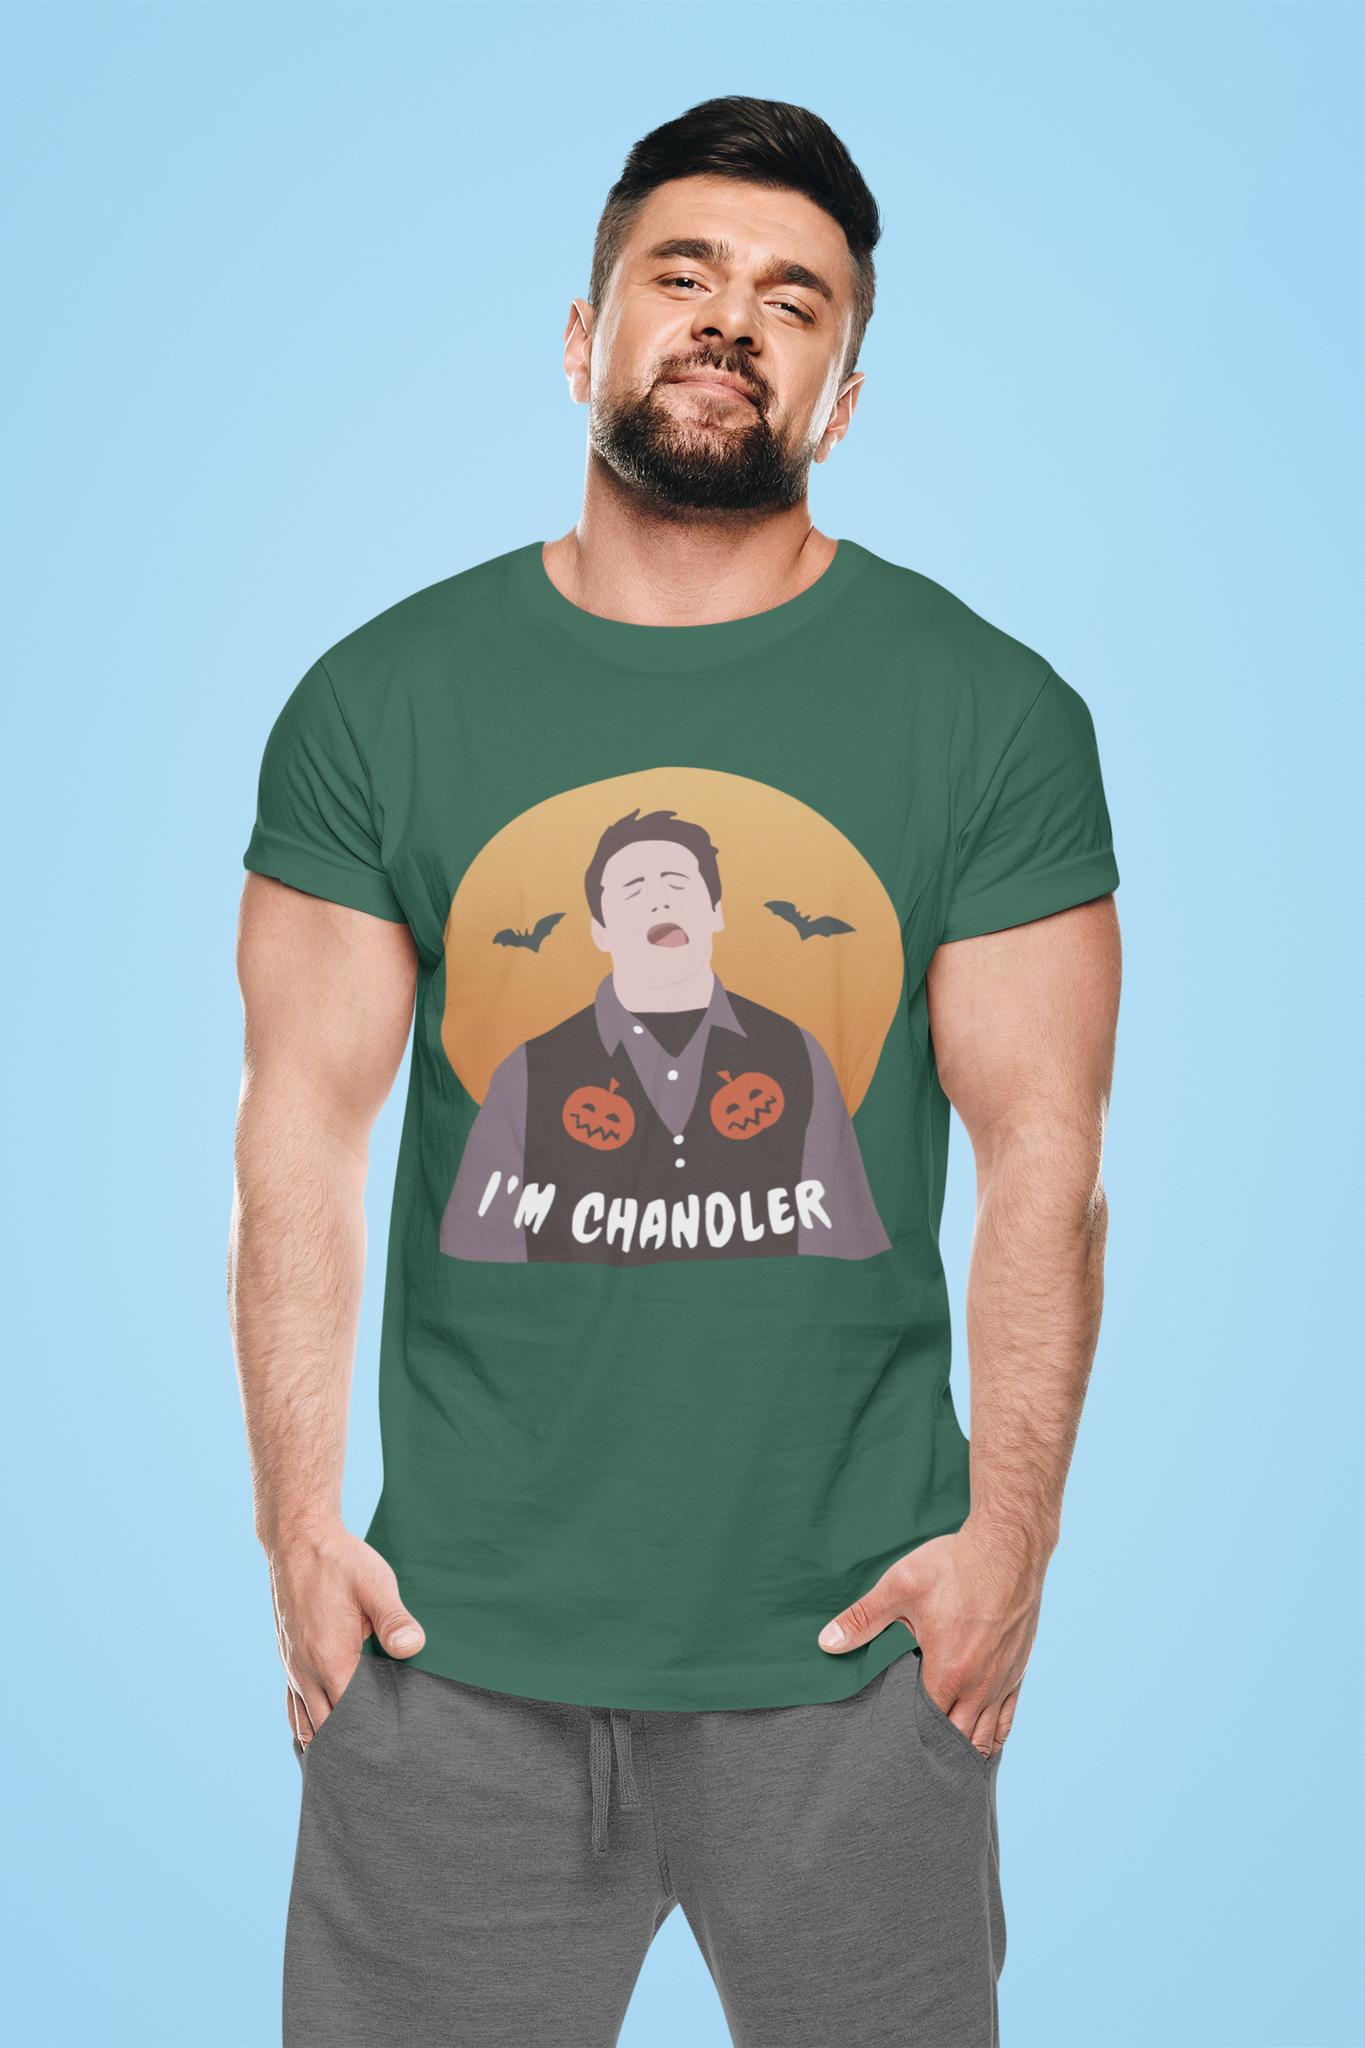 Friends TV Show T Shirt, Chandler T Shirt, Im Chandler Tshirt, Halloween Gifts